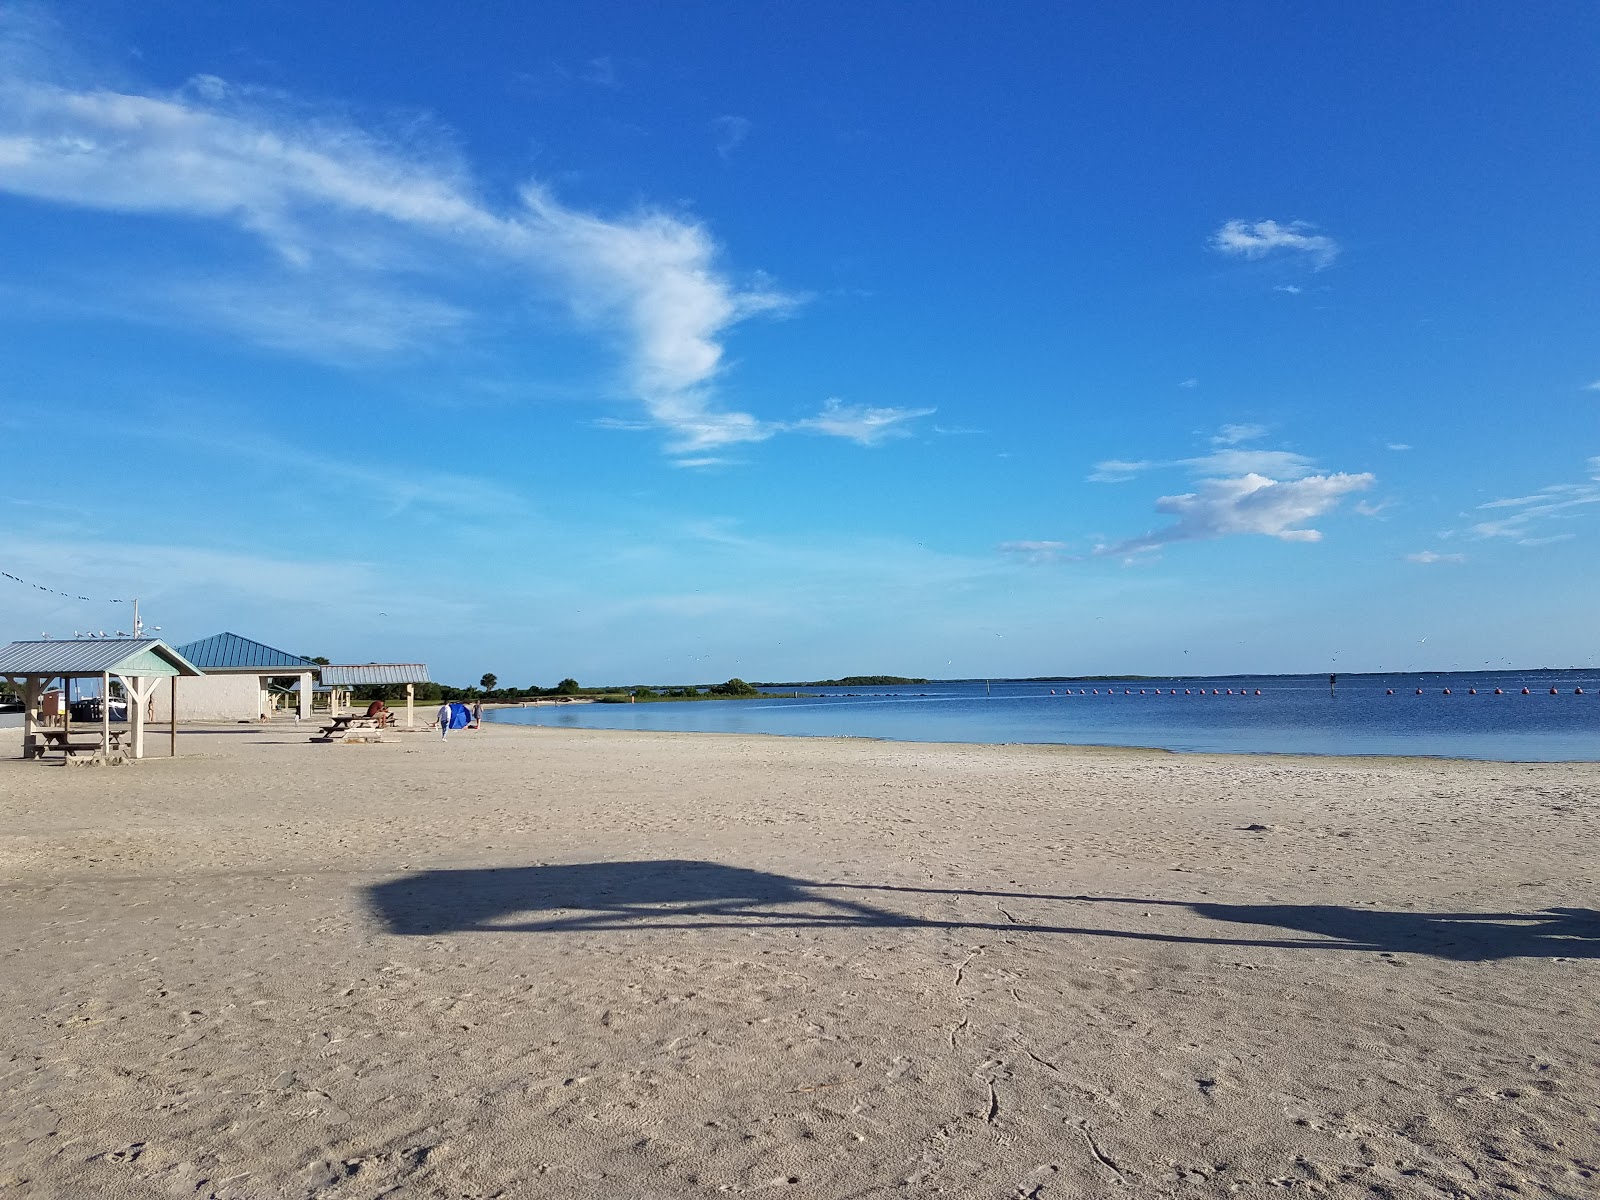 Photo de Fort island beach - endroit populaire parmi les connaisseurs de la détente